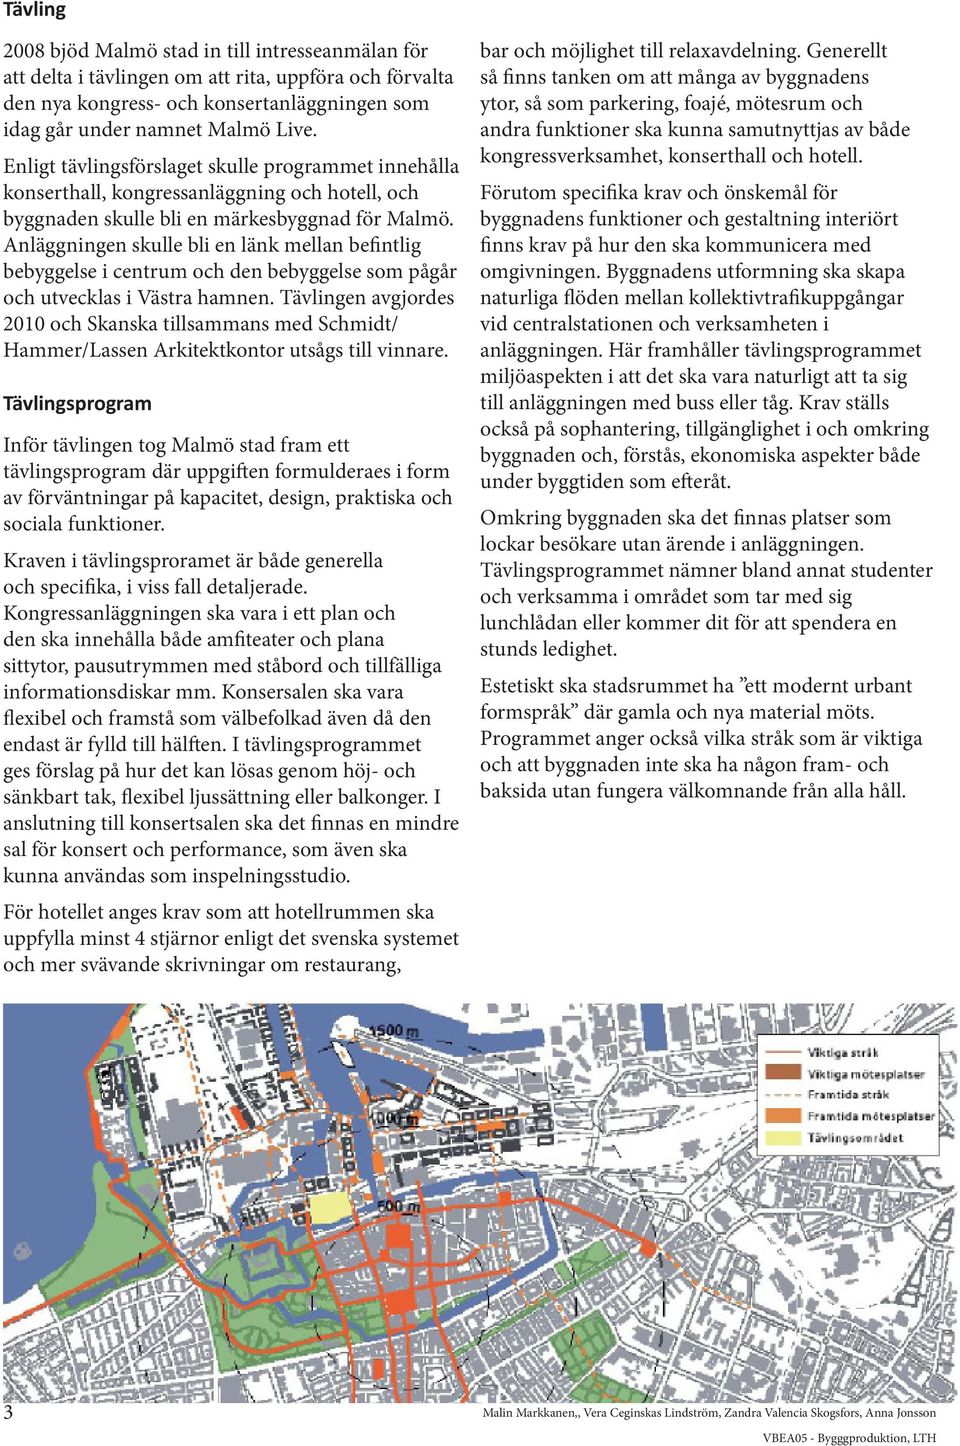 Anläggningen skulle bli en länk mellan befintlig bebyggelse i centrum och den bebyggelse som pågår och utvecklas i Västra hamnen.